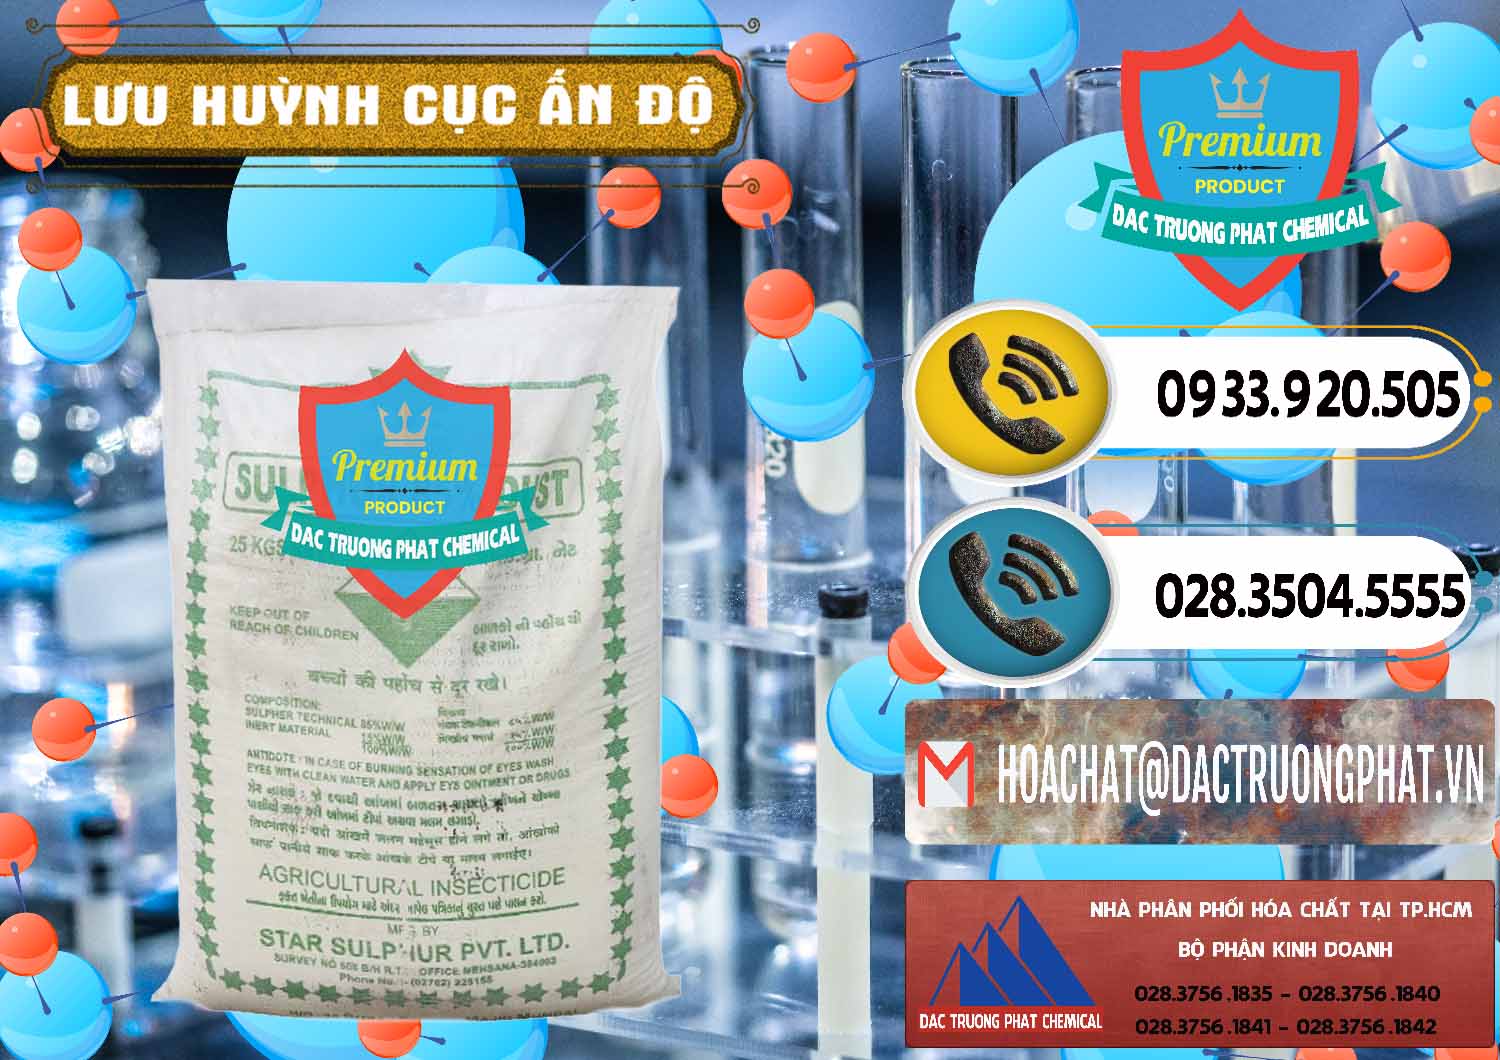 Nơi bán & cung cấp Lưu huỳnh Cục - Sulfur Ấn Độ India - 0348 - Phân phối _ bán hóa chất tại TP.HCM - hoachatdetnhuom.vn